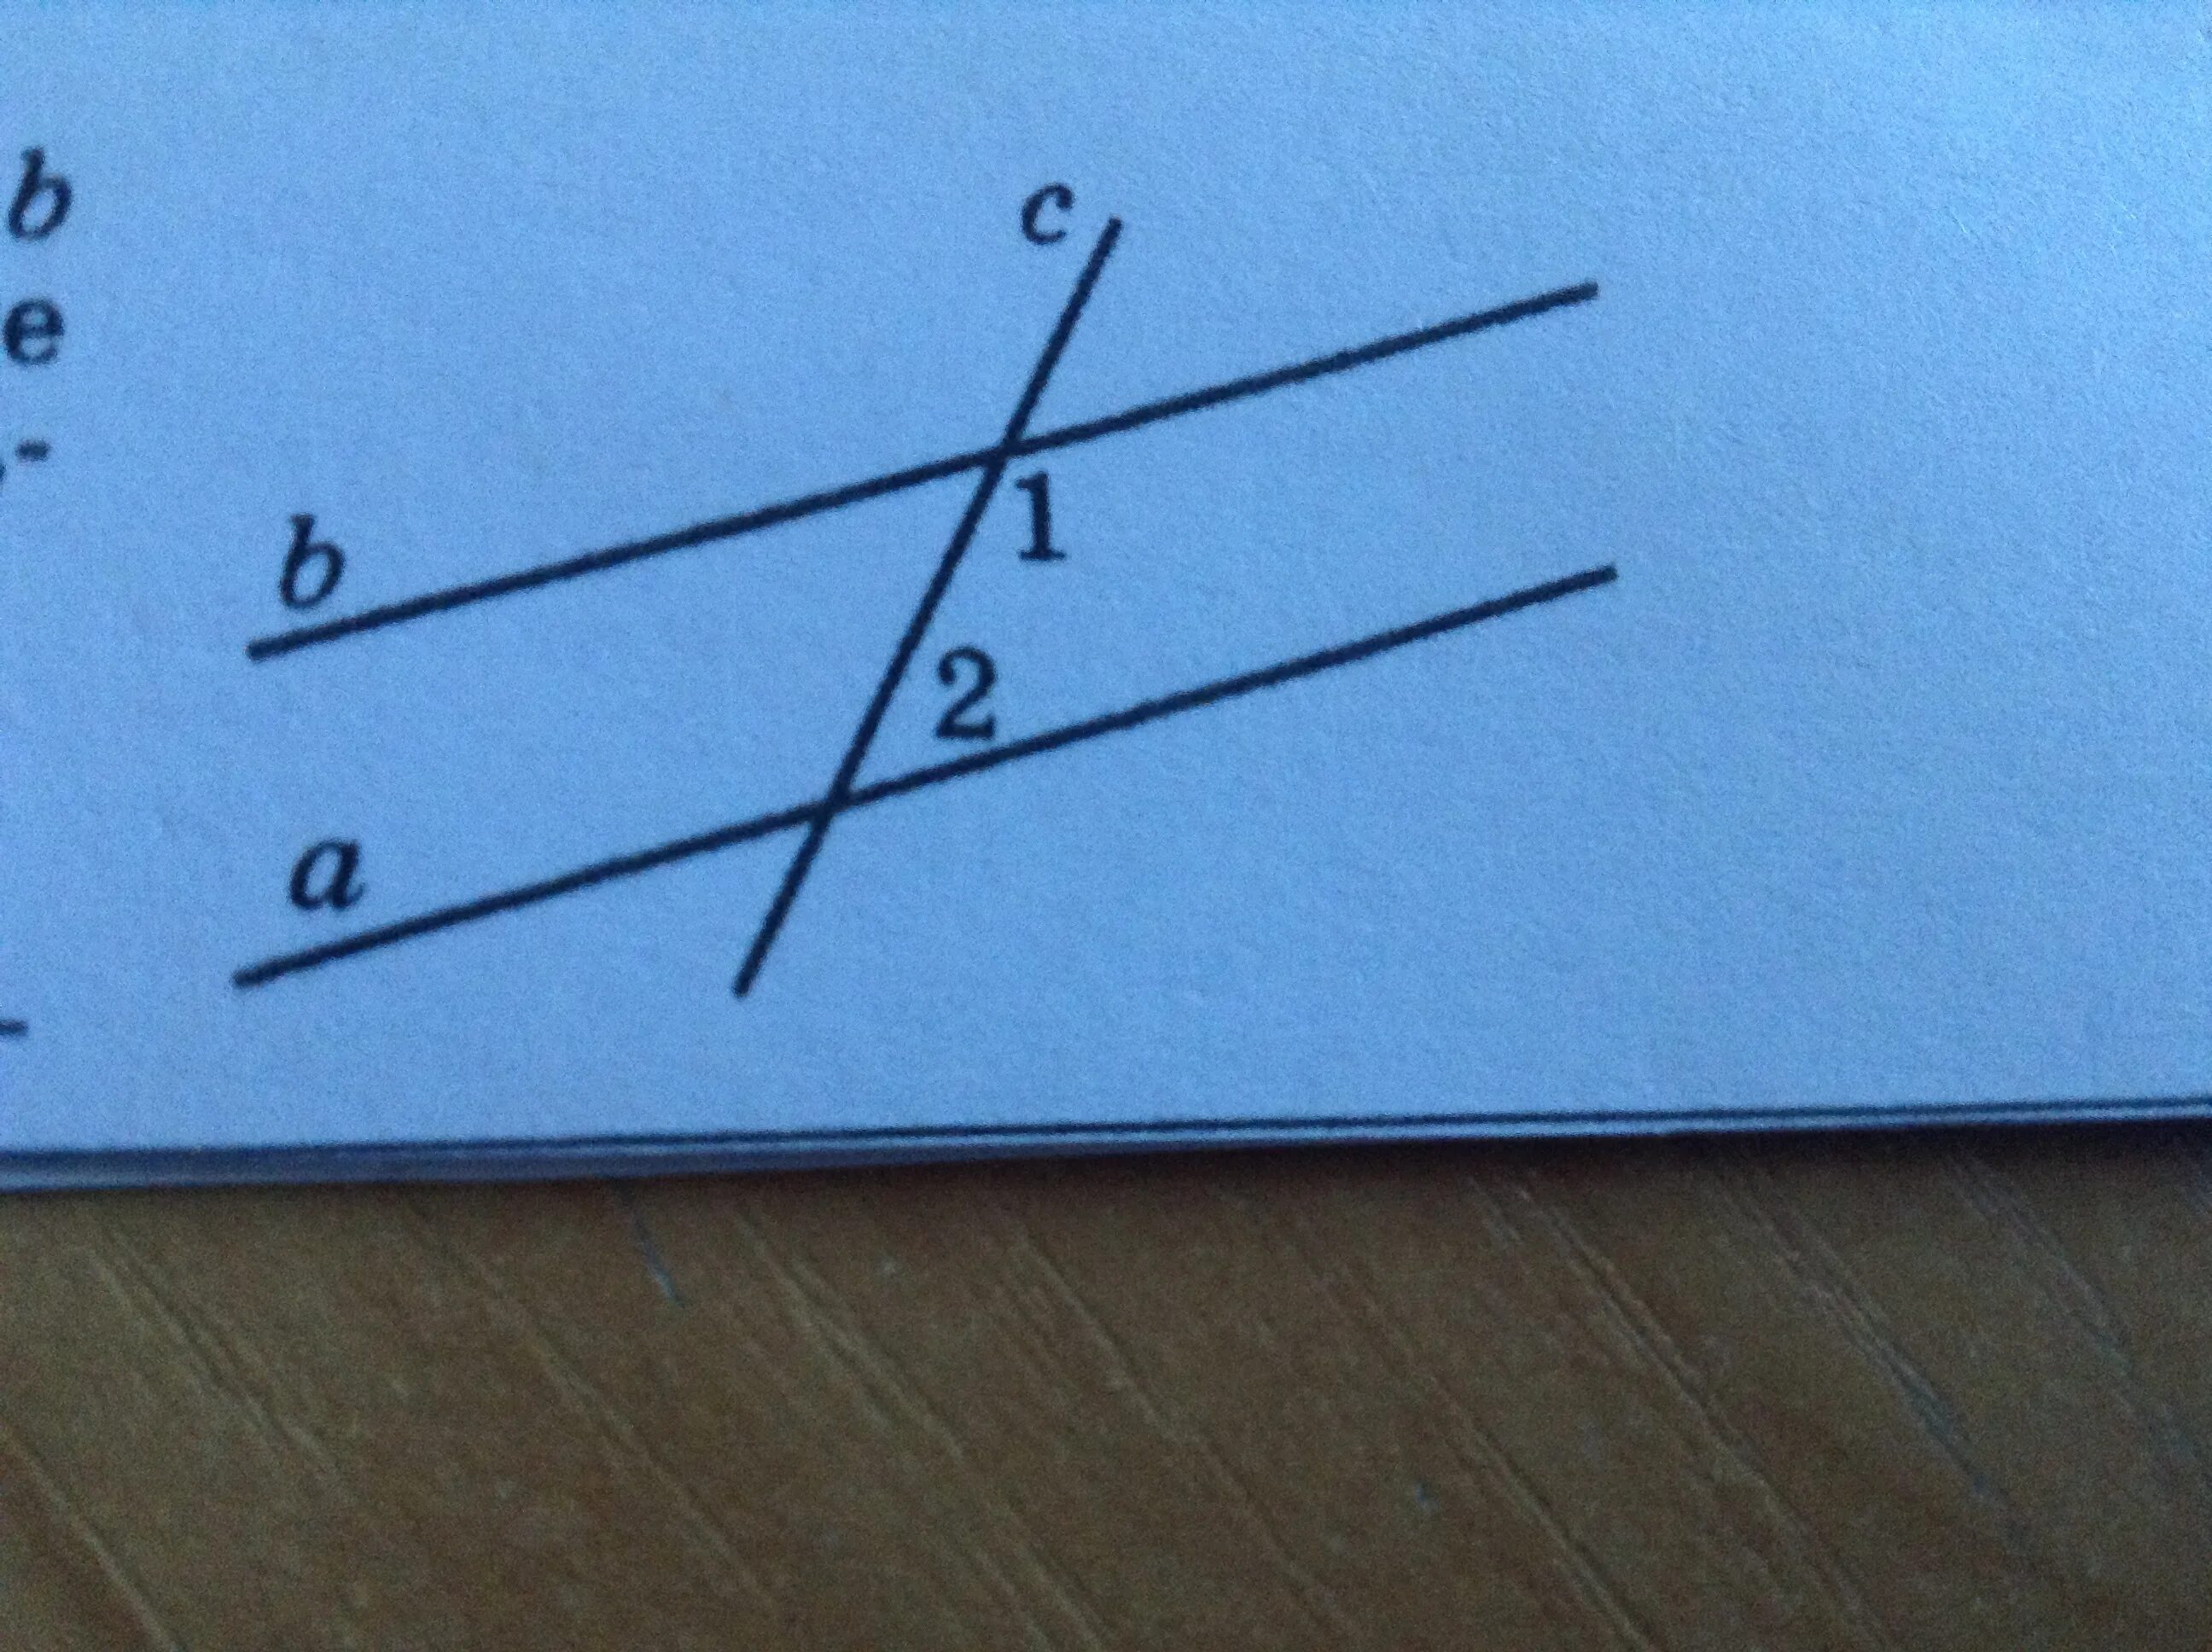 А в угол 1 28. Секущая прямая. А параллельна б. Параллельные прямые а и б. Прямые а и б параллельны с секущая.